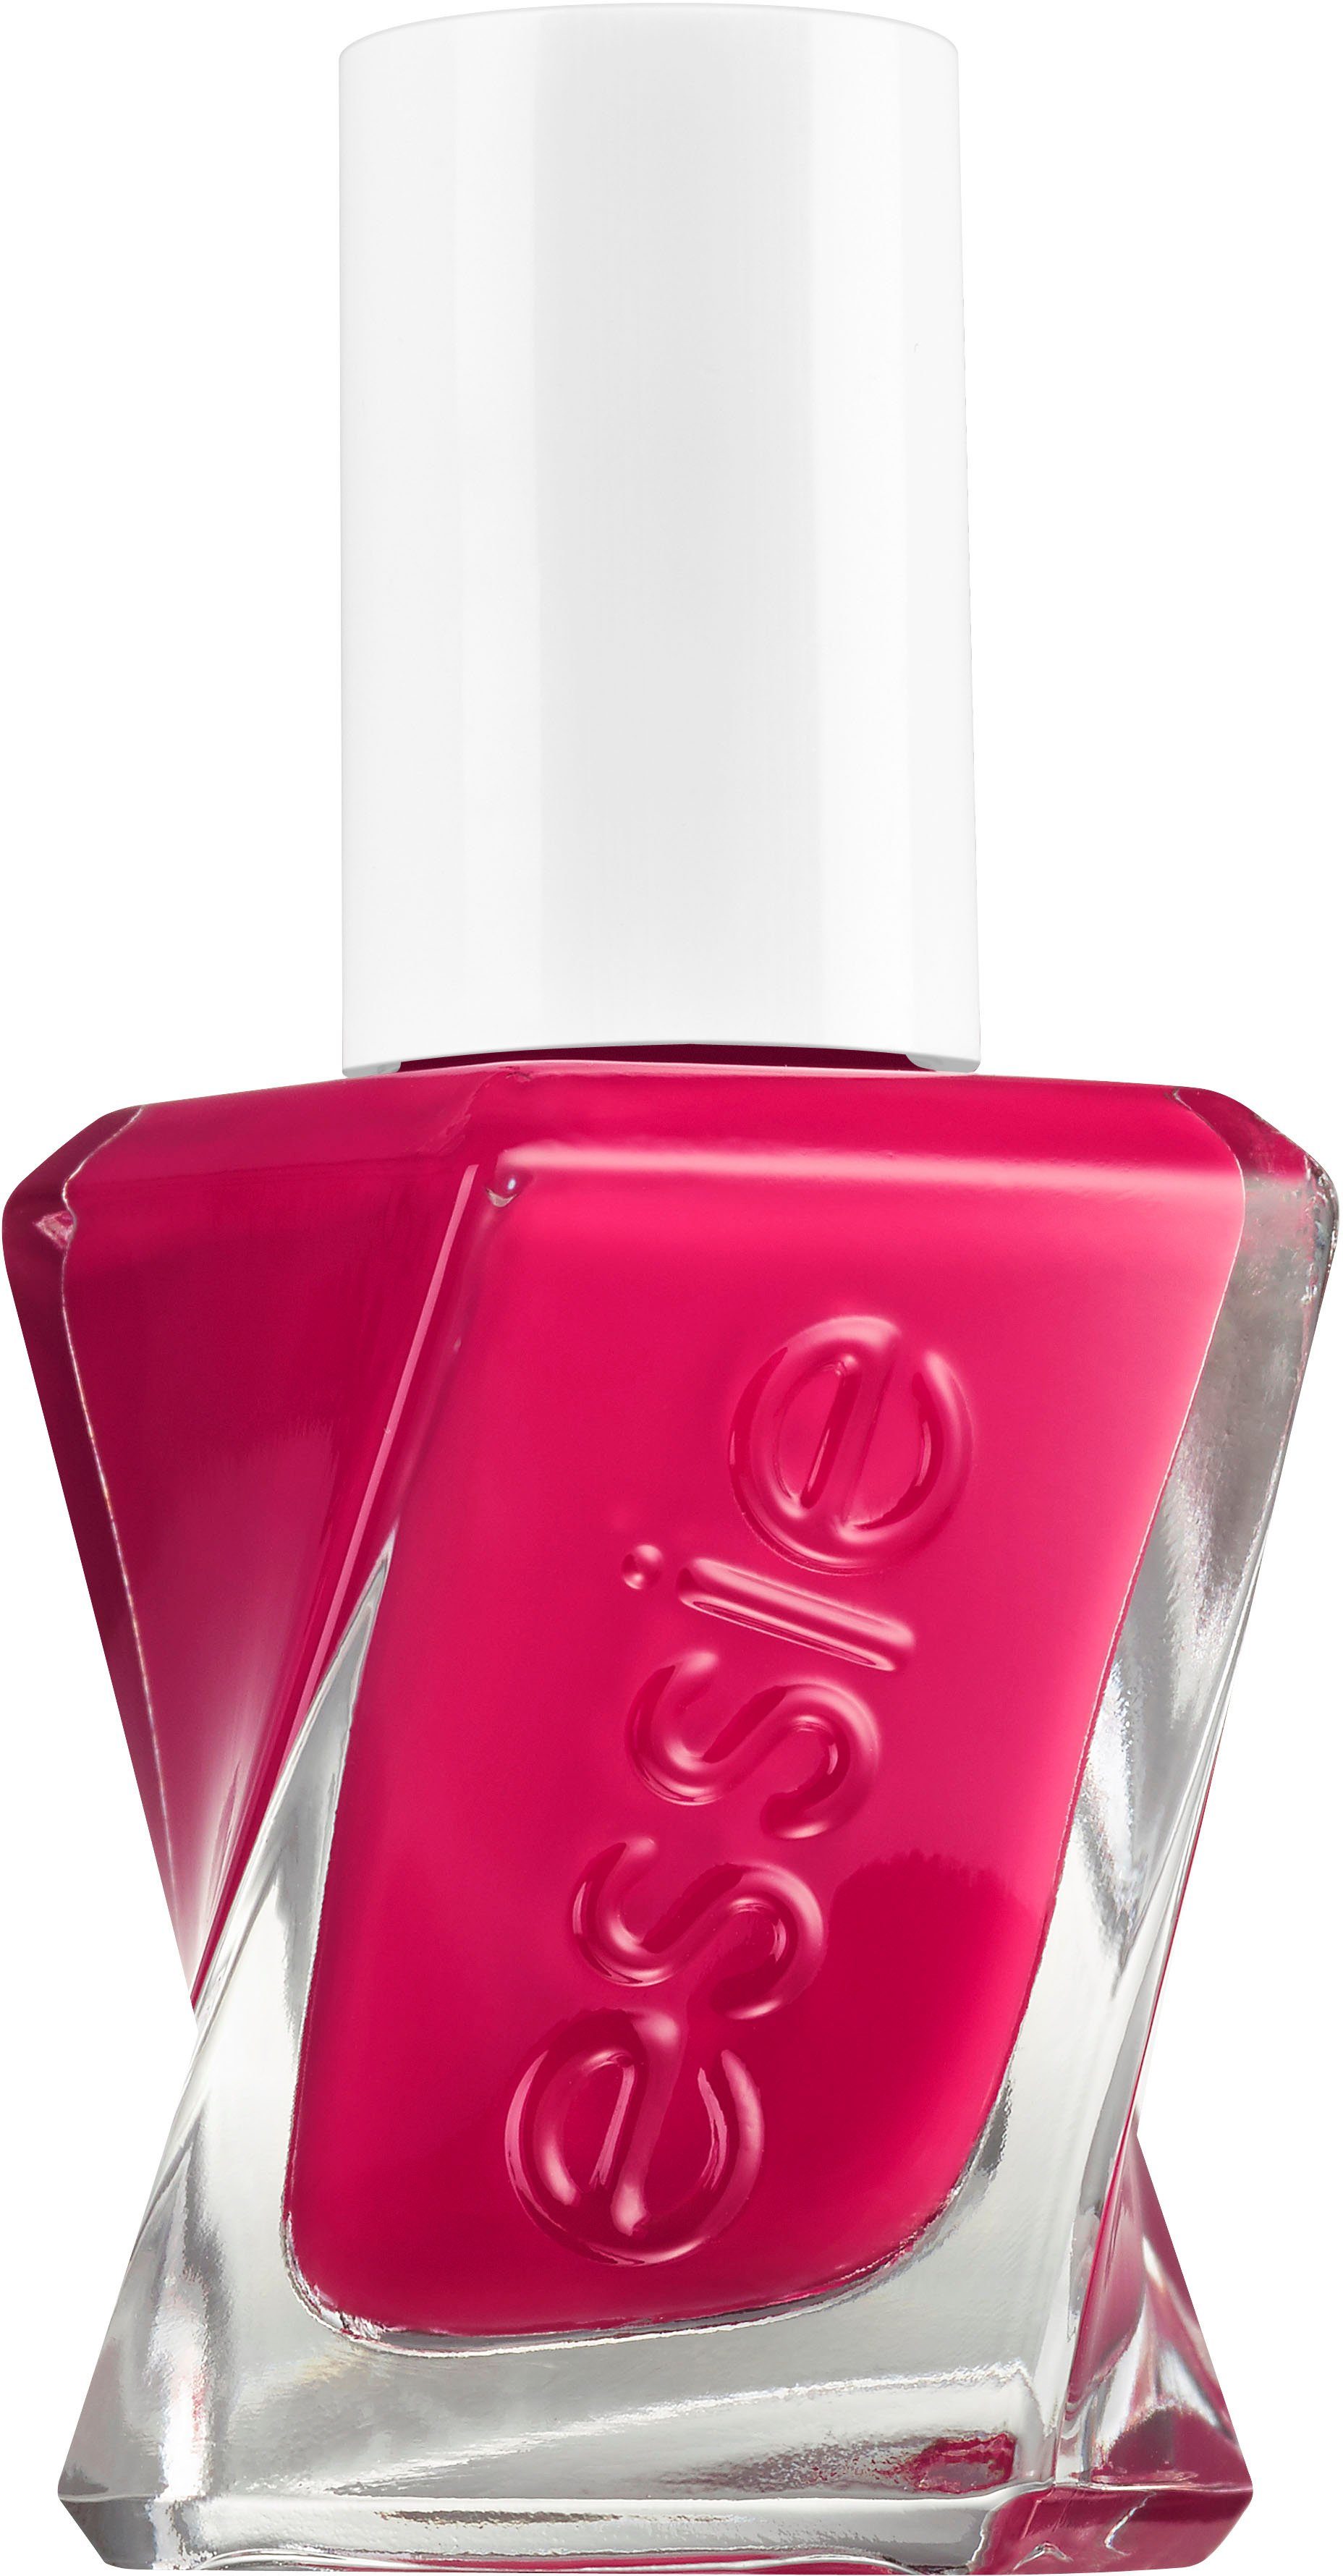 spottbillig verschleudern essie Gel-Nagellack Gel Couture Pink Nr. 300 it/factor the